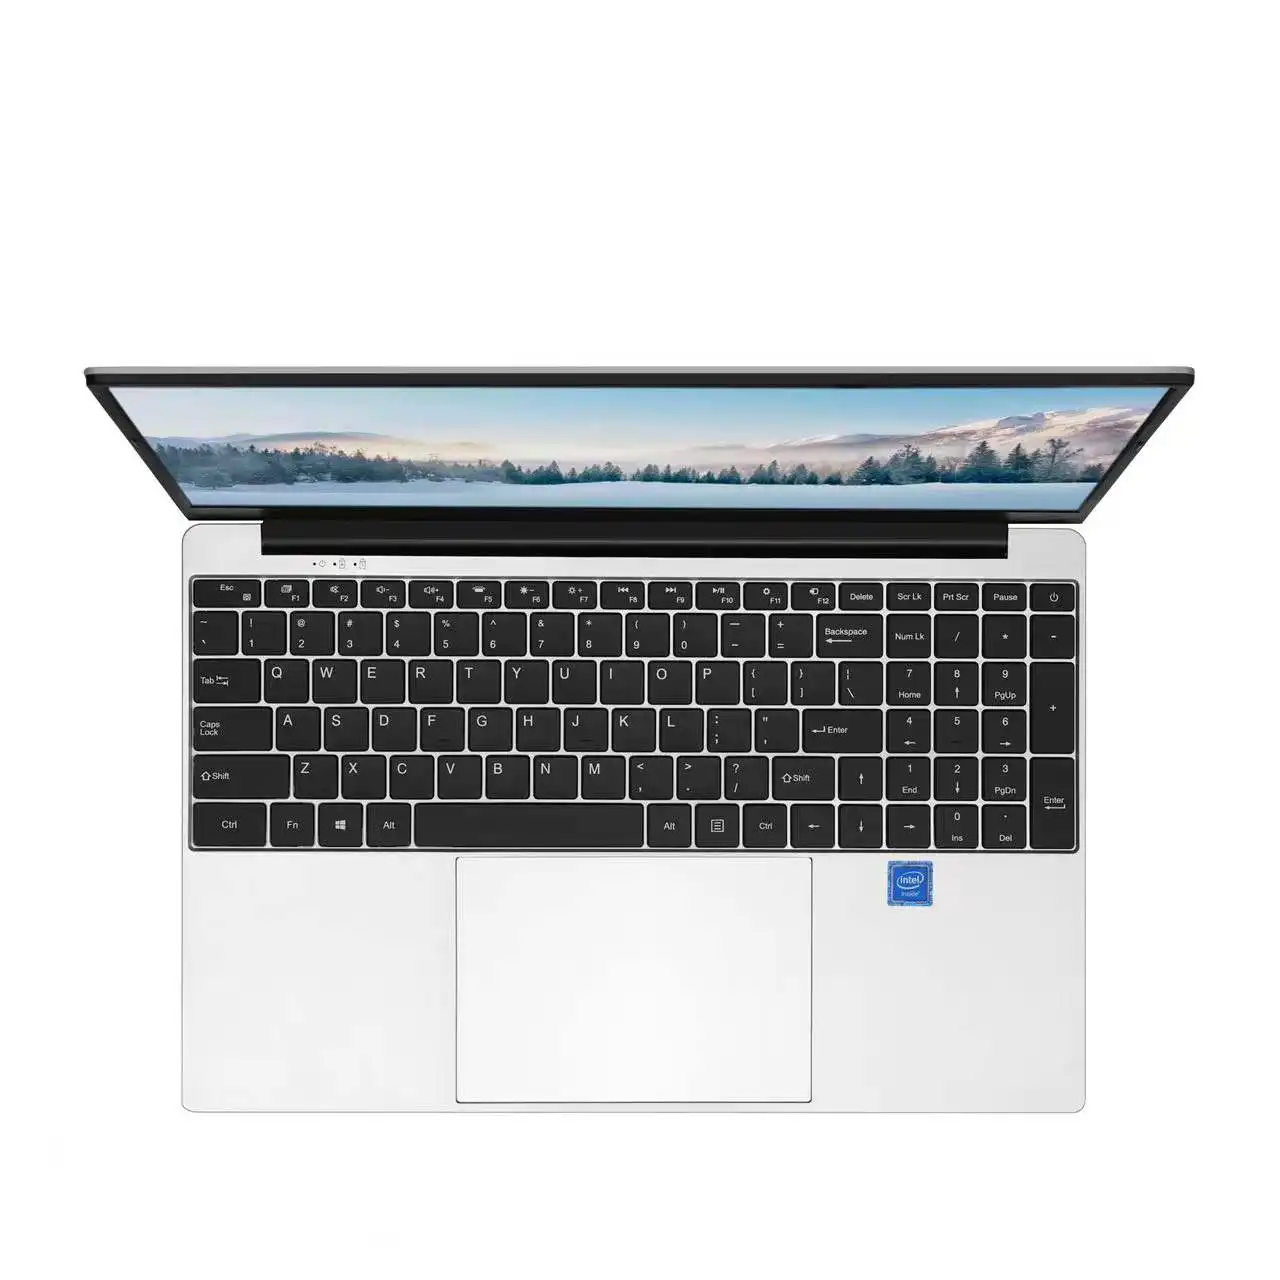 Fábrica fornecer diretamente netbook 15.6 polegadas, j4125 quad core ddr4 8gb ssd 256gb novo laptop win10 computador